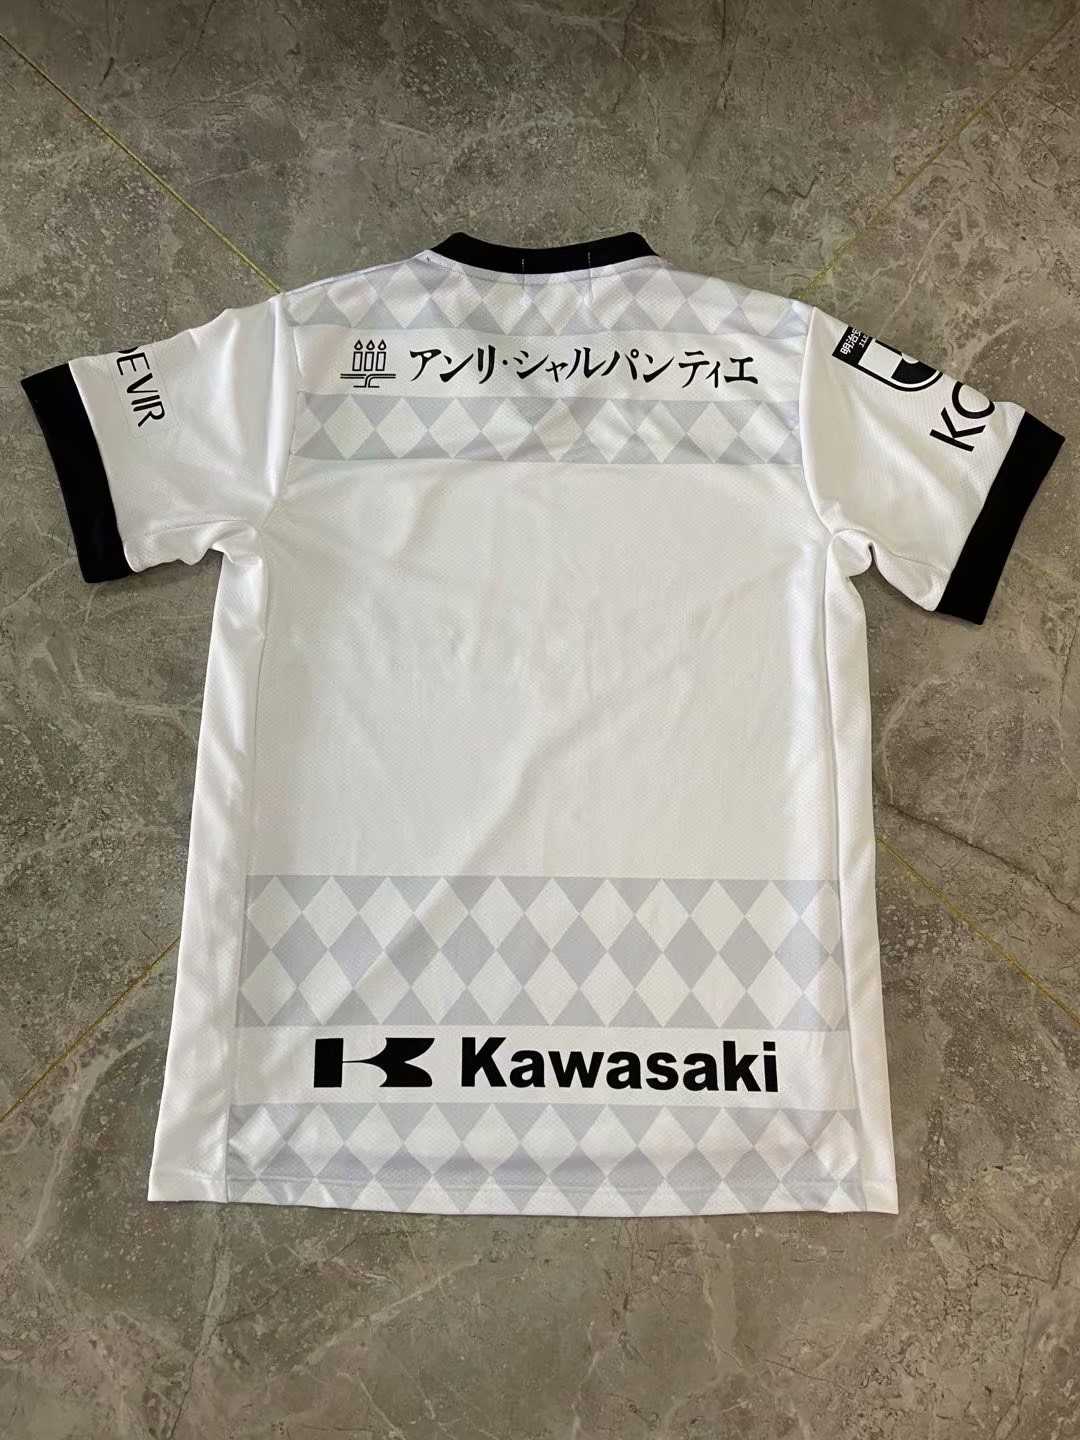 2021/22 Vissel Kobe Third Mens Soccer Jersey Replica 